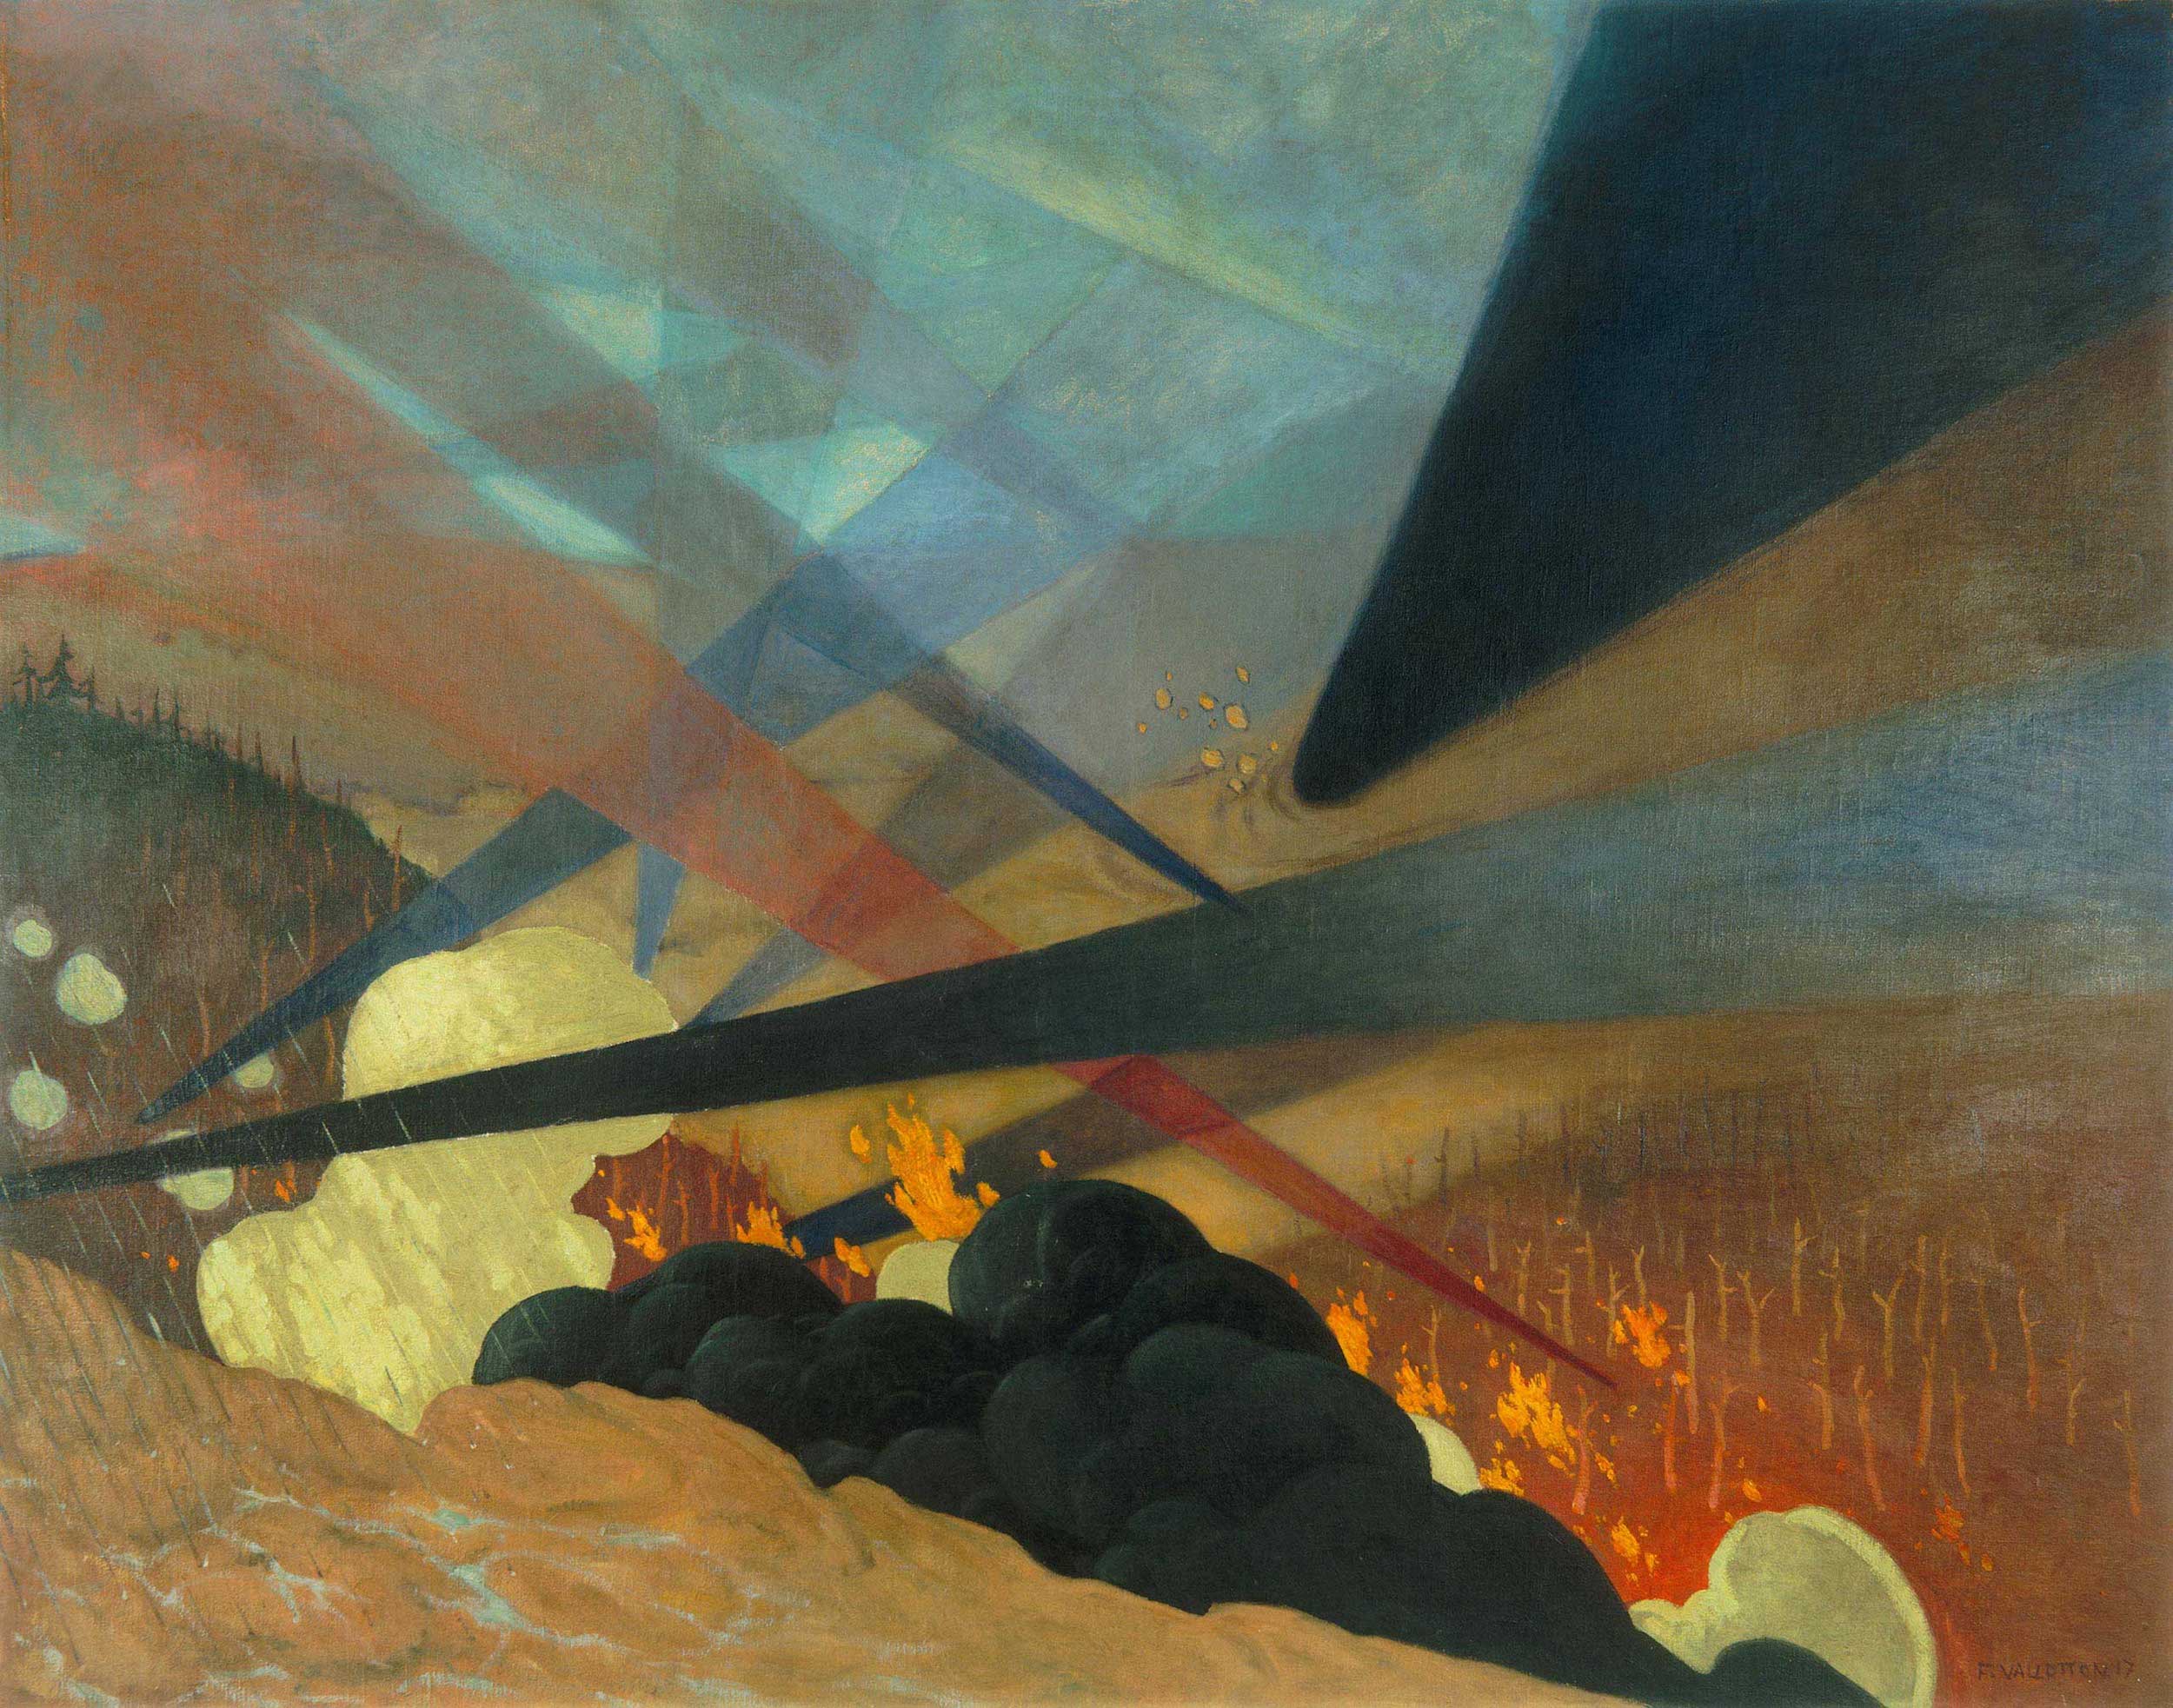 Верден by Félix Vallotton - 1917 - 114 x 146 cm 